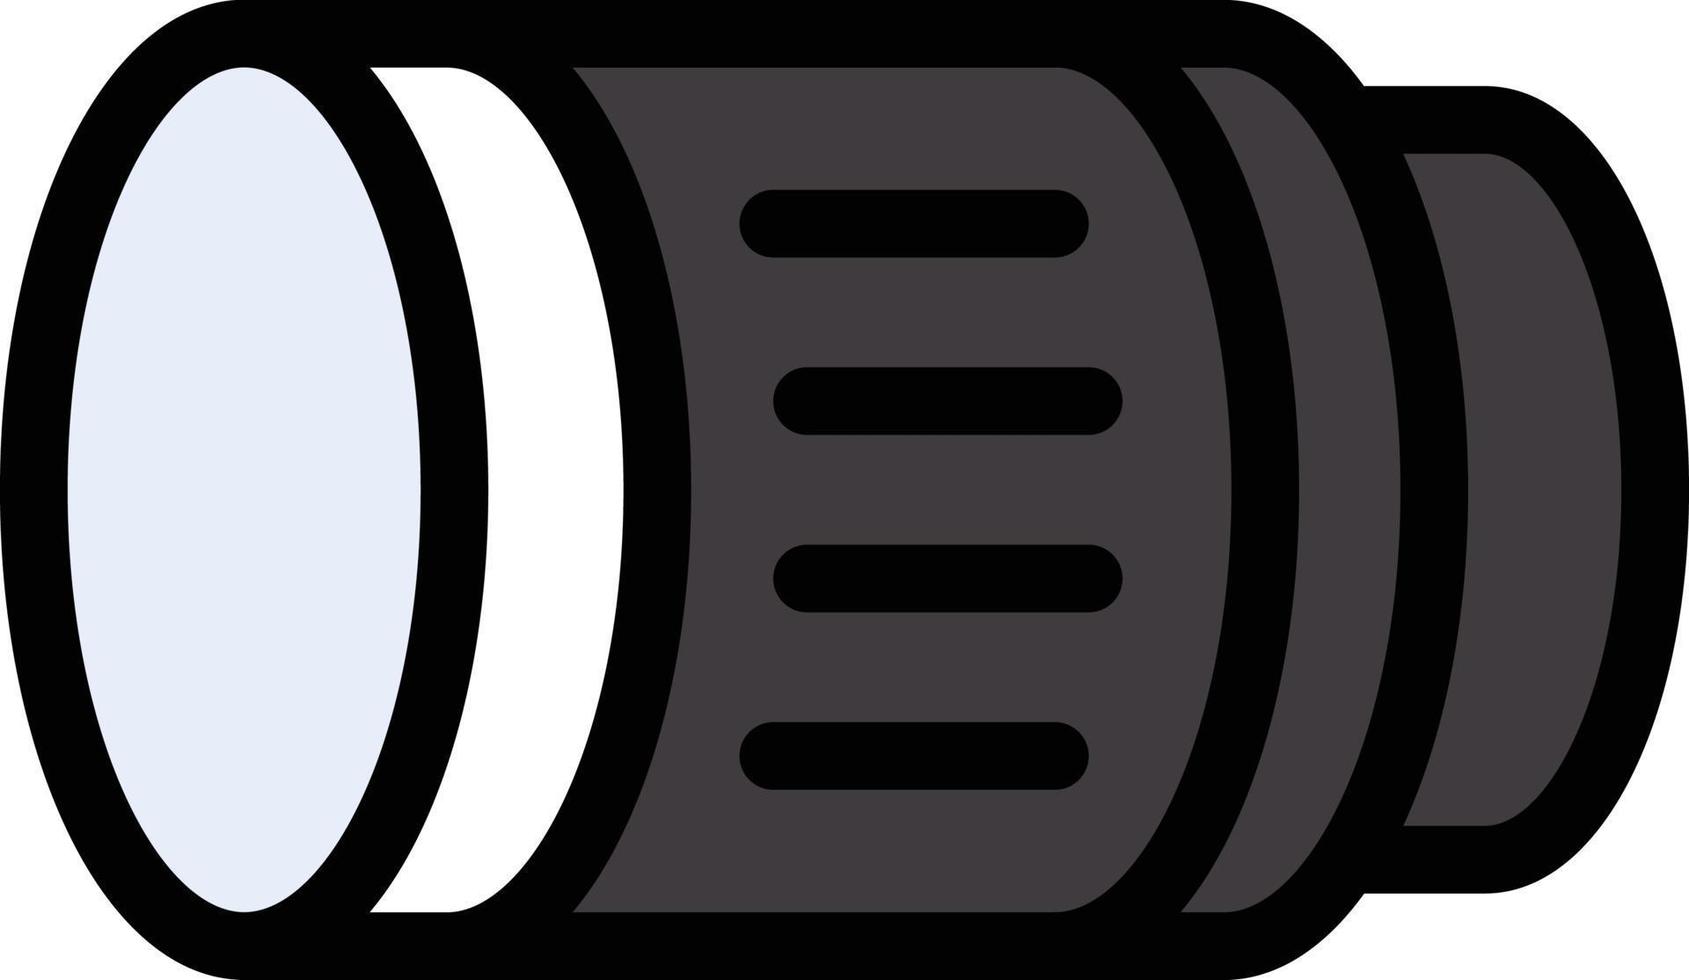 ilustración de vector de lente en un fondo. símbolos de calidad premium. iconos vectoriales para concepto y diseño gráfico.